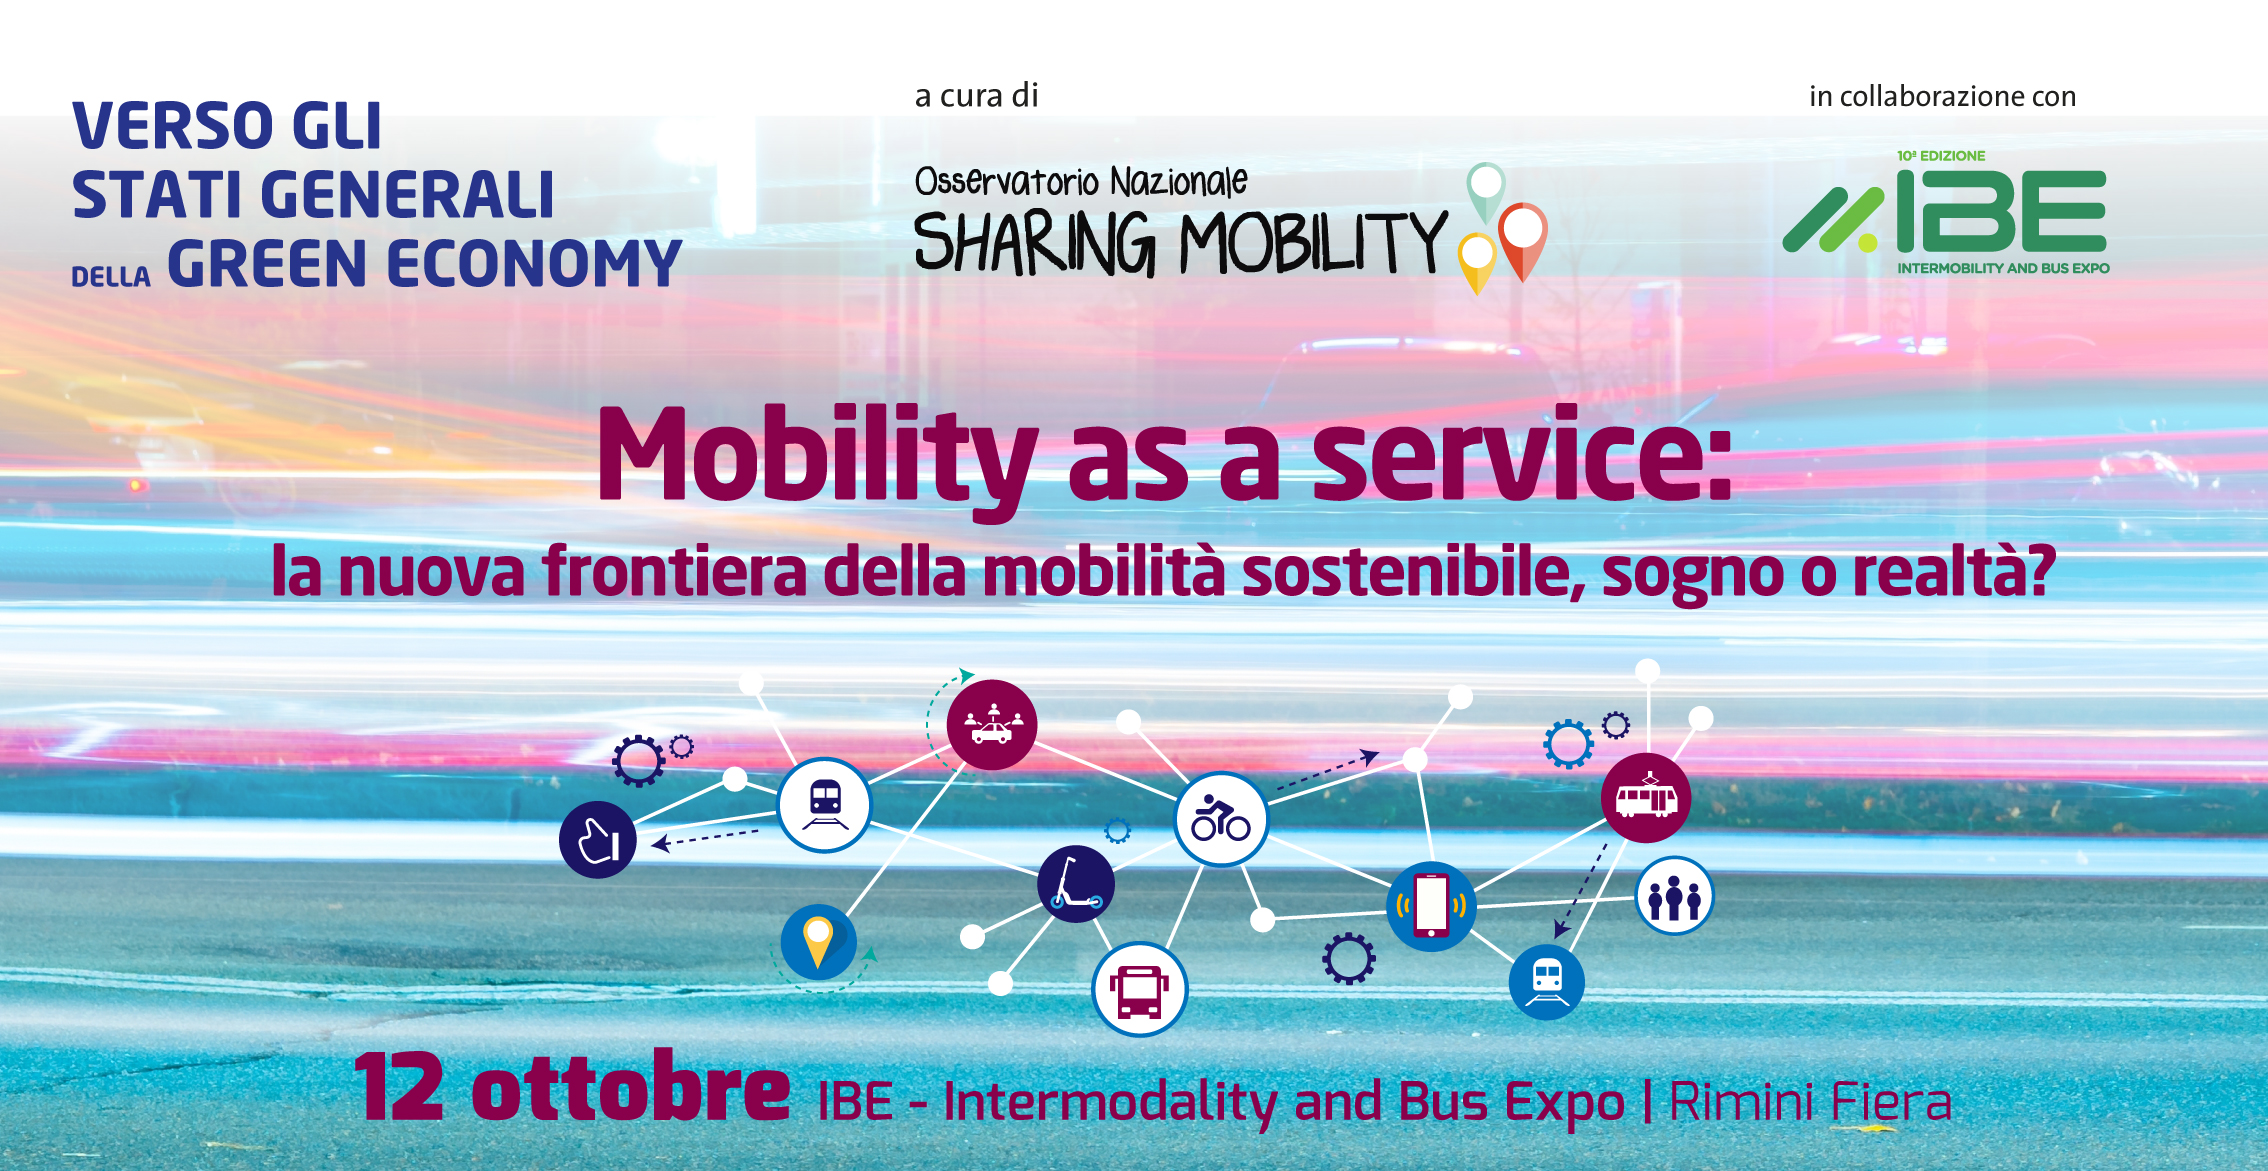 Verso gli Stati Generali 2022. Mobility as a Service: la nuova frontiera della mobilità sostenibile, sogno o realtà?